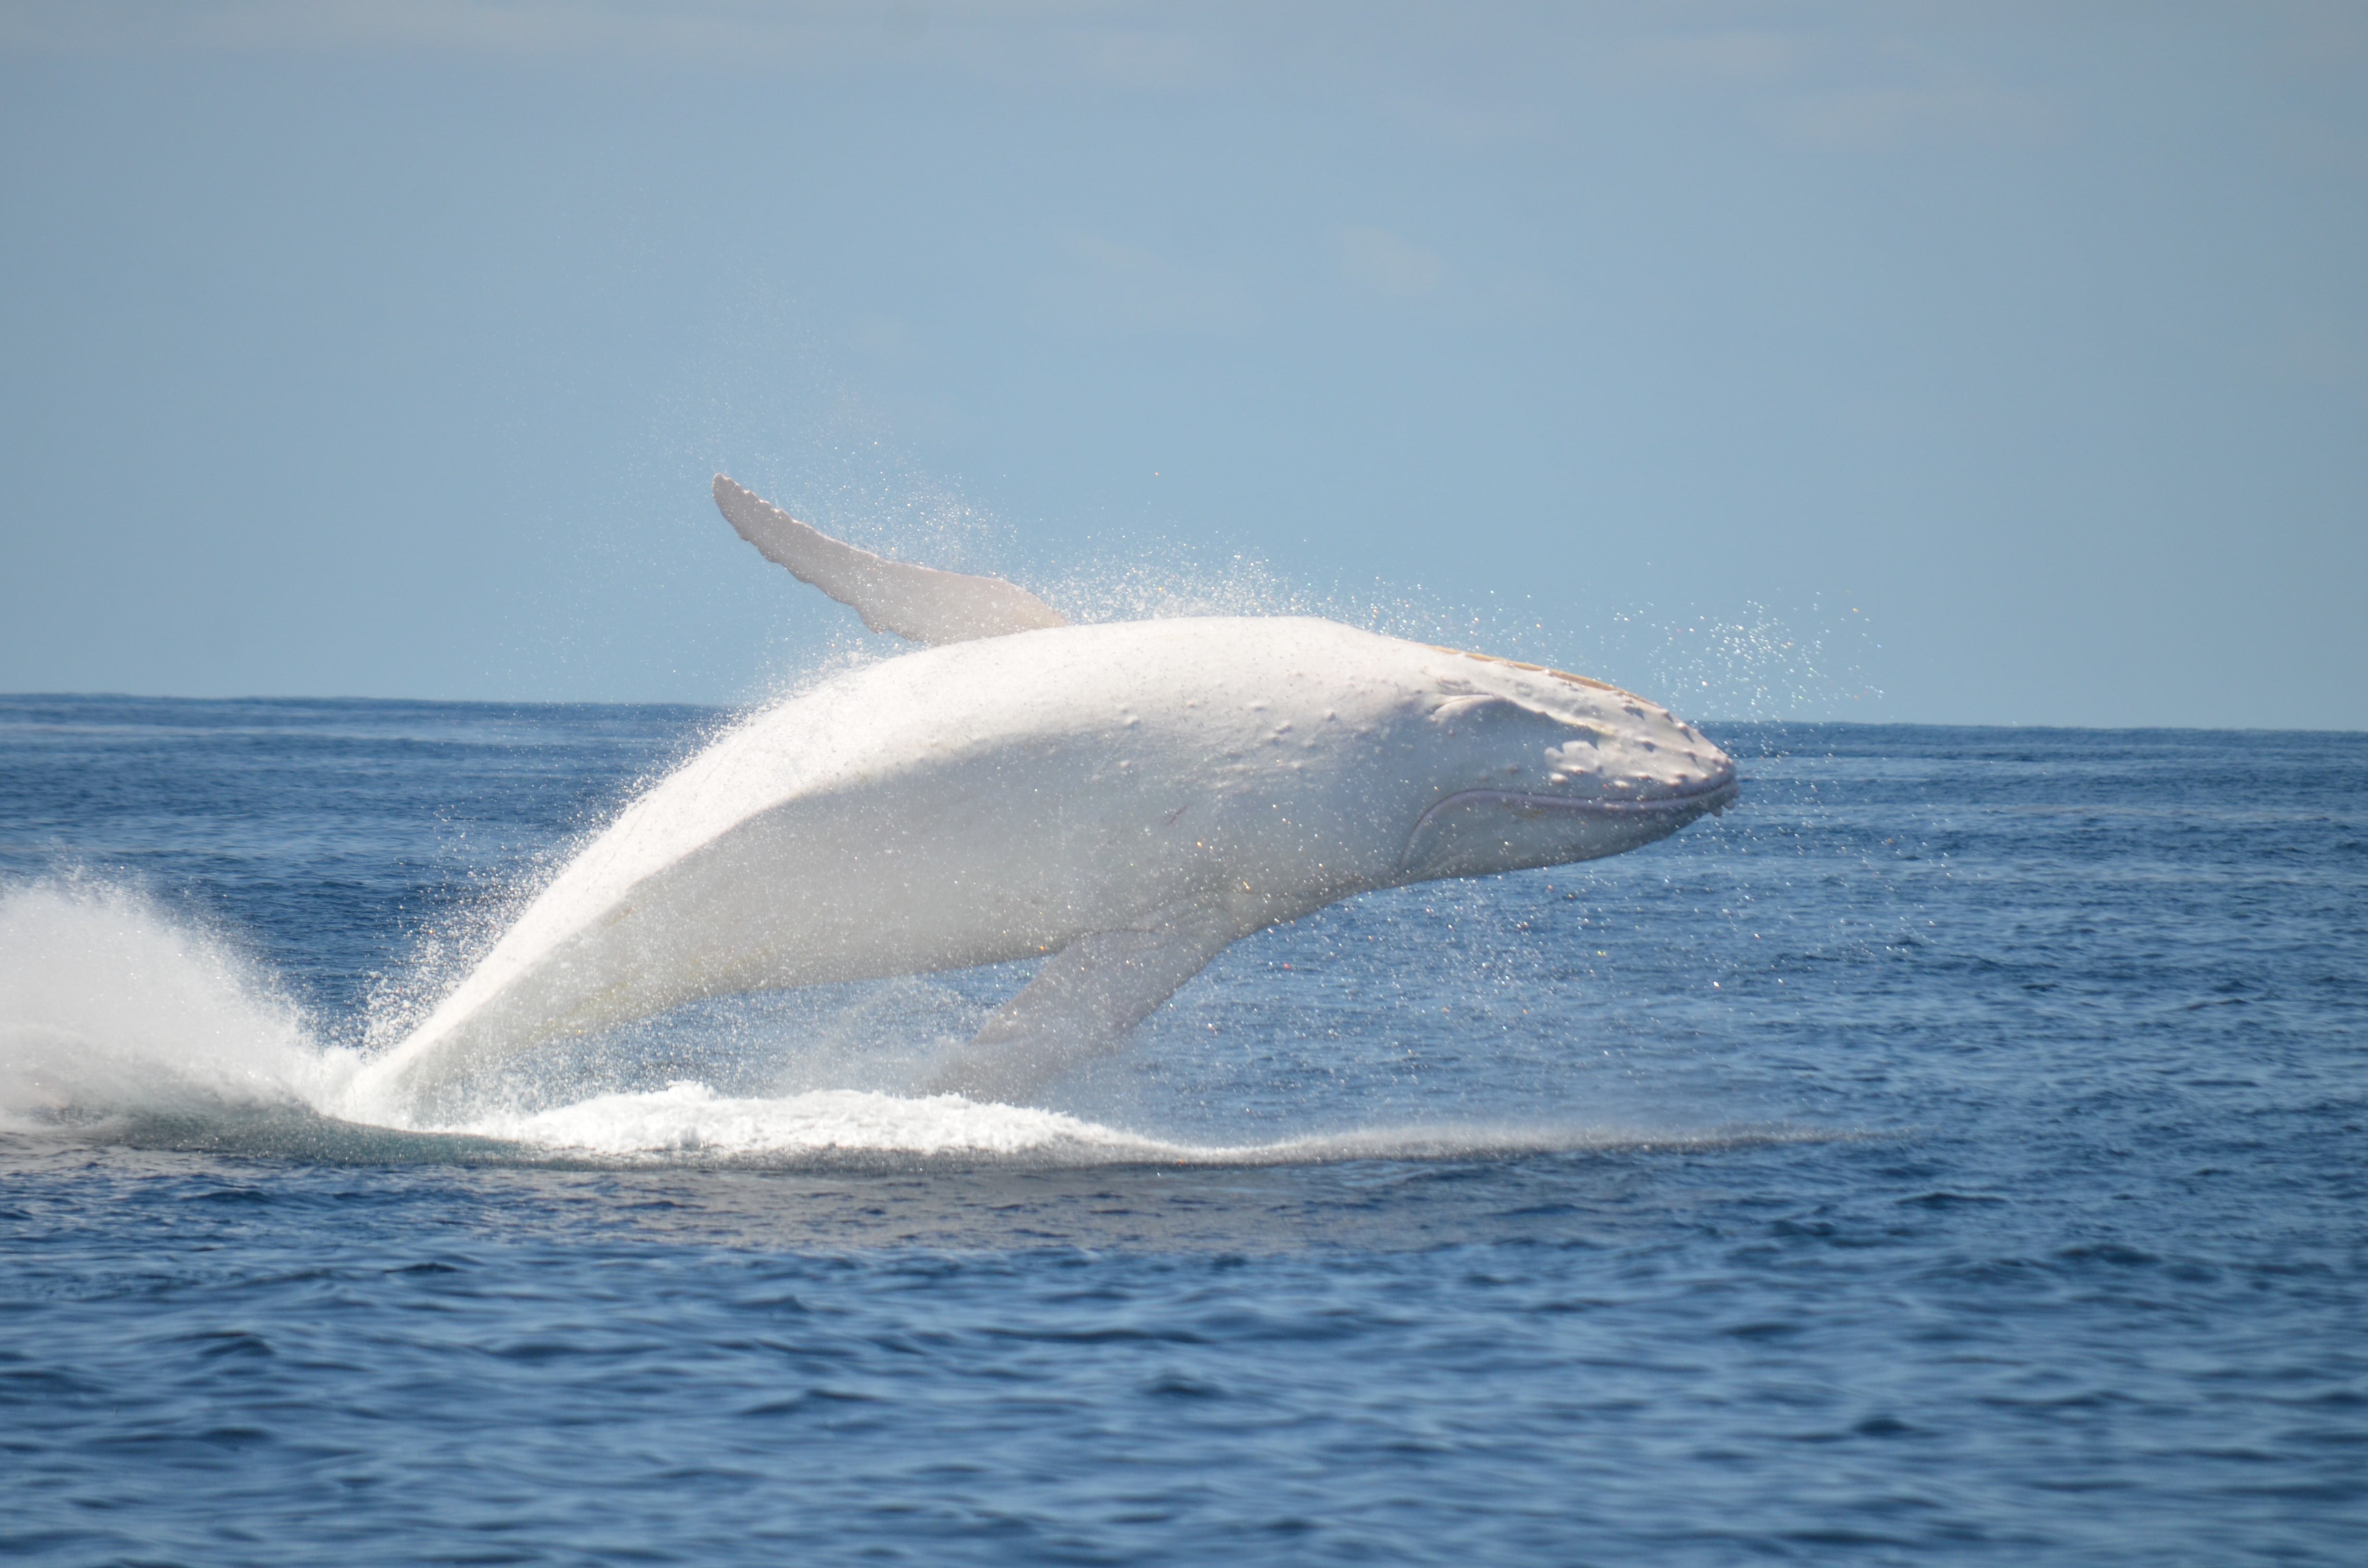 Лоб дельфина. Горбатый кит Мигалу. Белый кит Мигалу. Кит Горбач альбинос. Касатка Дельфин Белуха кит.